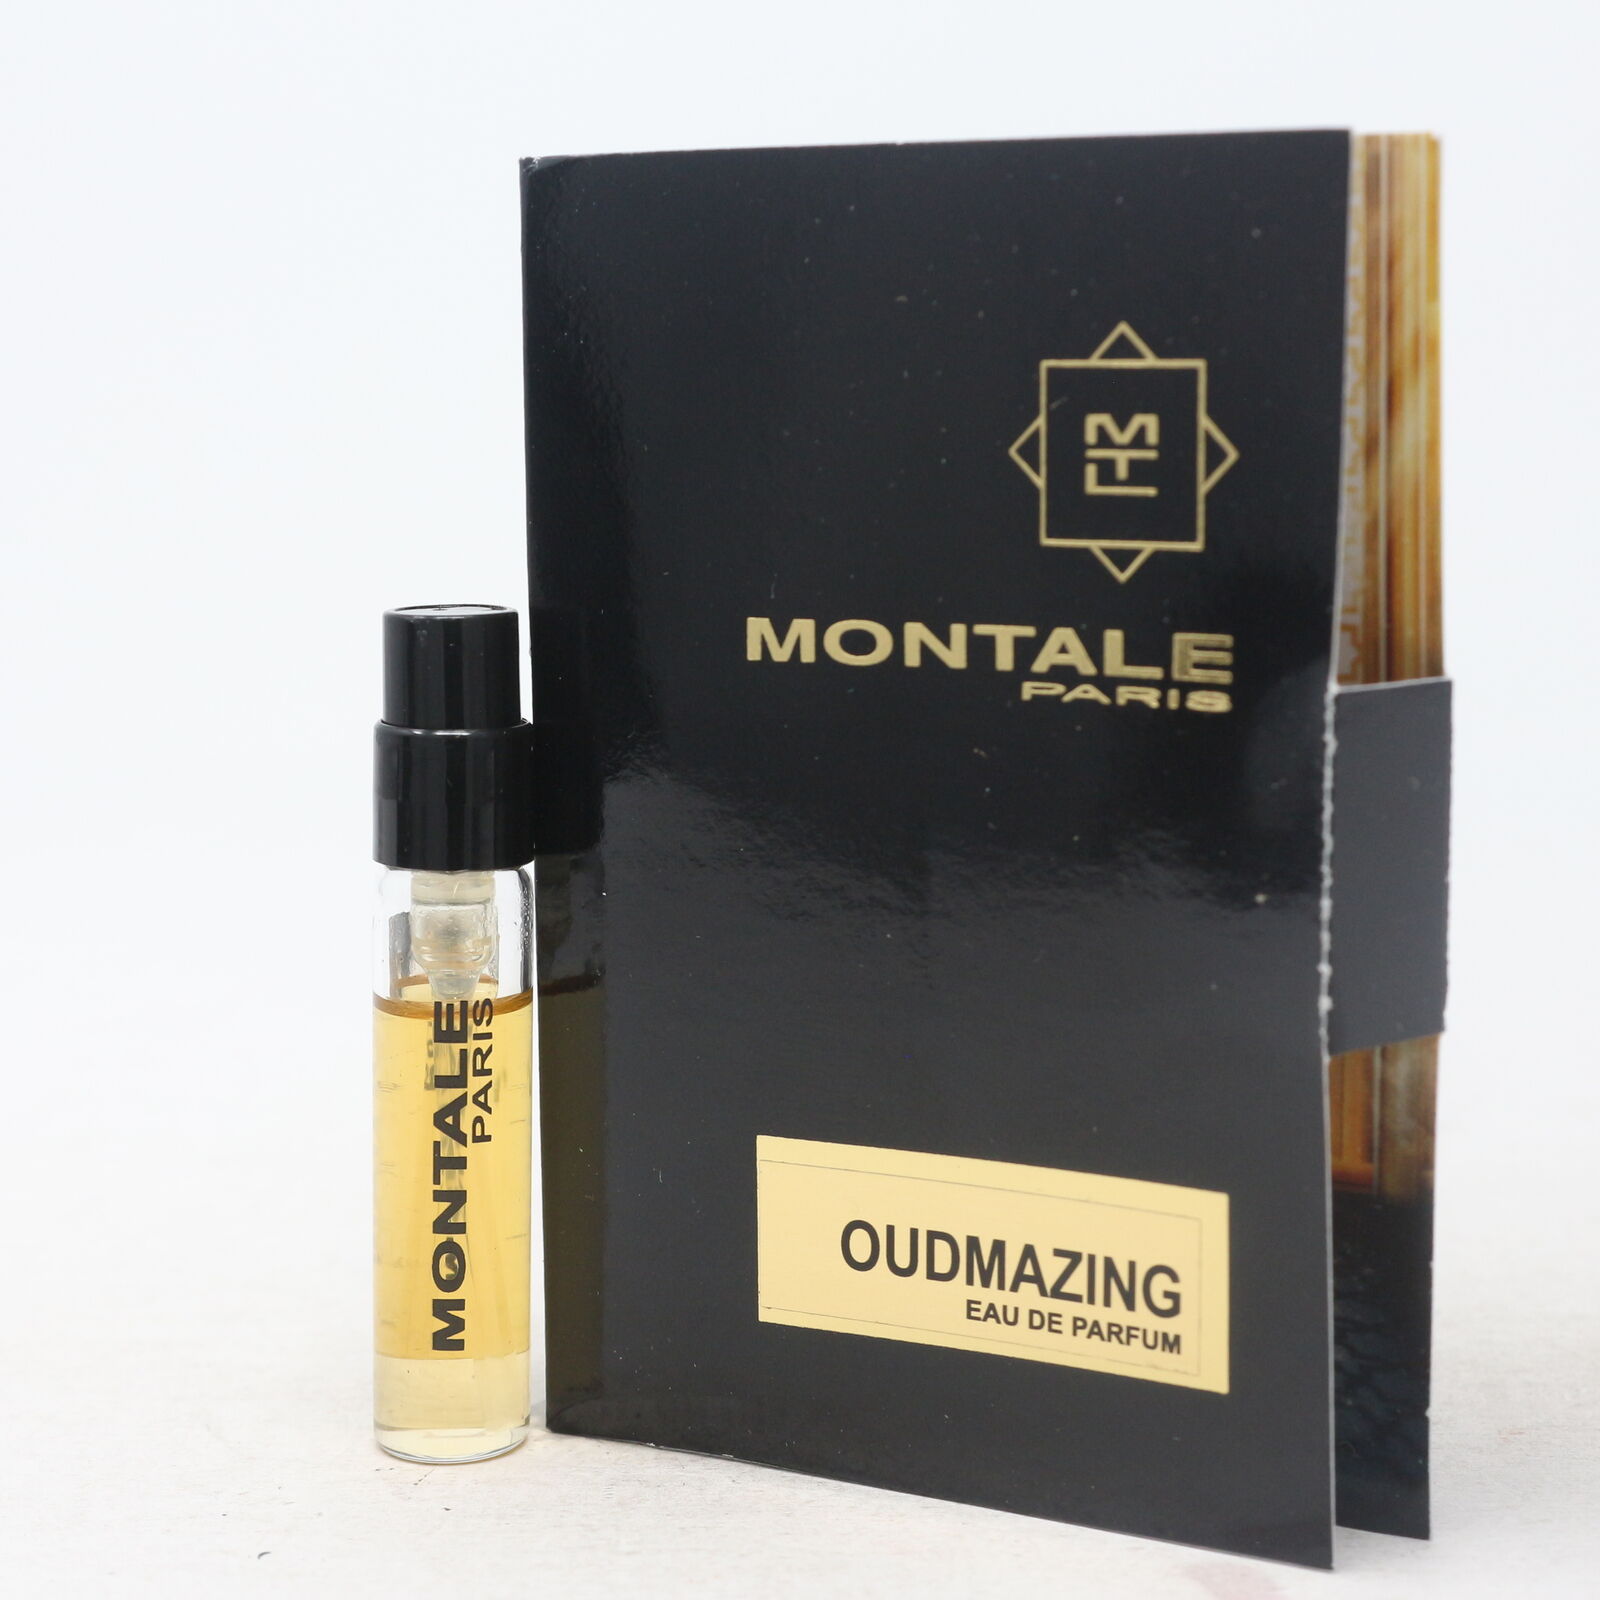 Oudmazing by Montale Paris Eau De Parfum Vial 0.07oz/2ml Spray New